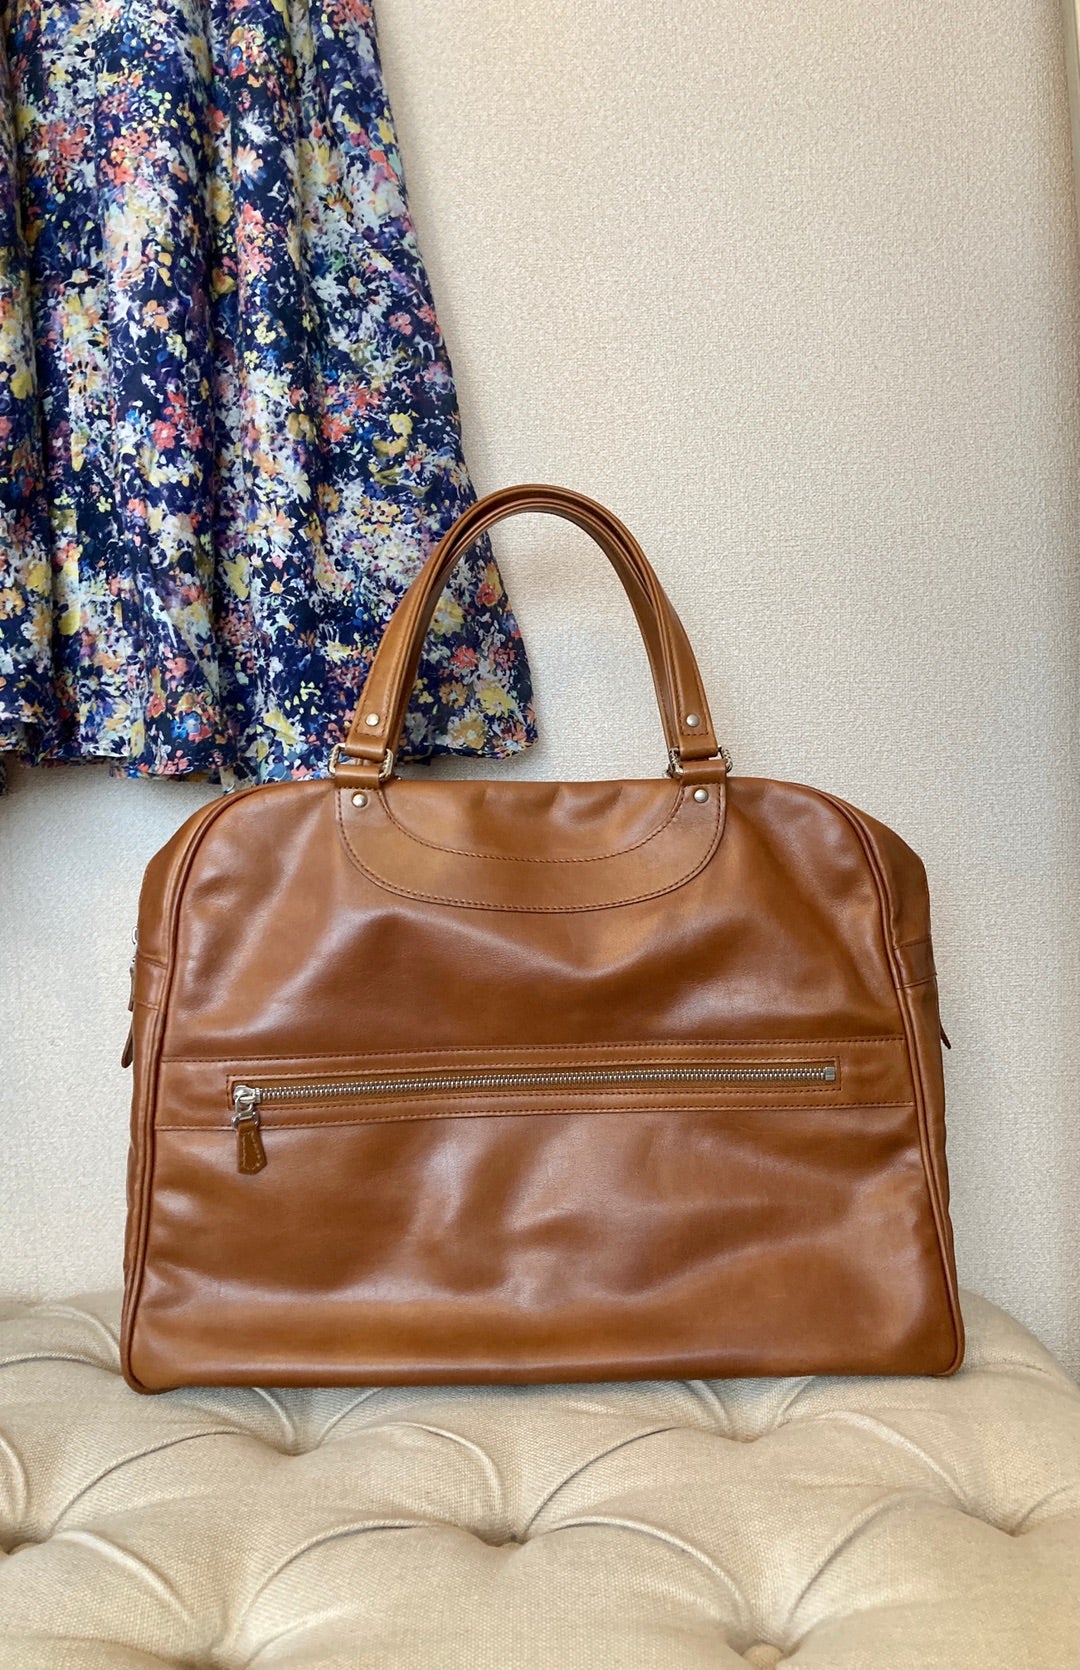 ジャックルコー のバッグ | Paris♡のブログ